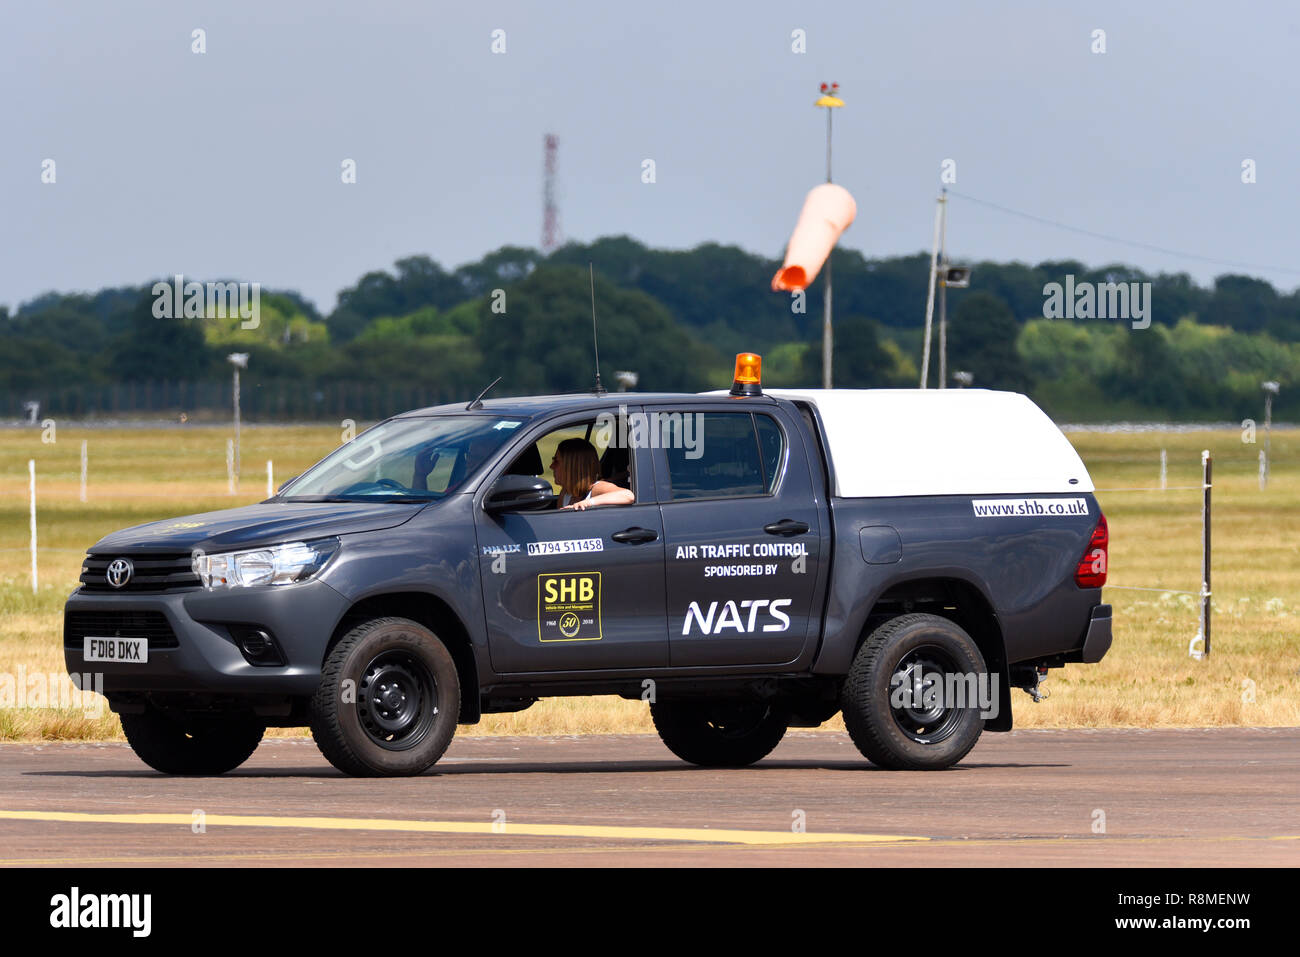 NATS Air Traffic Control vehicle at Royal International Air Tattoo, RIAT, RAF Fairford air show. National Air Traffic Services car. SHB vehicle hire Stock Photo